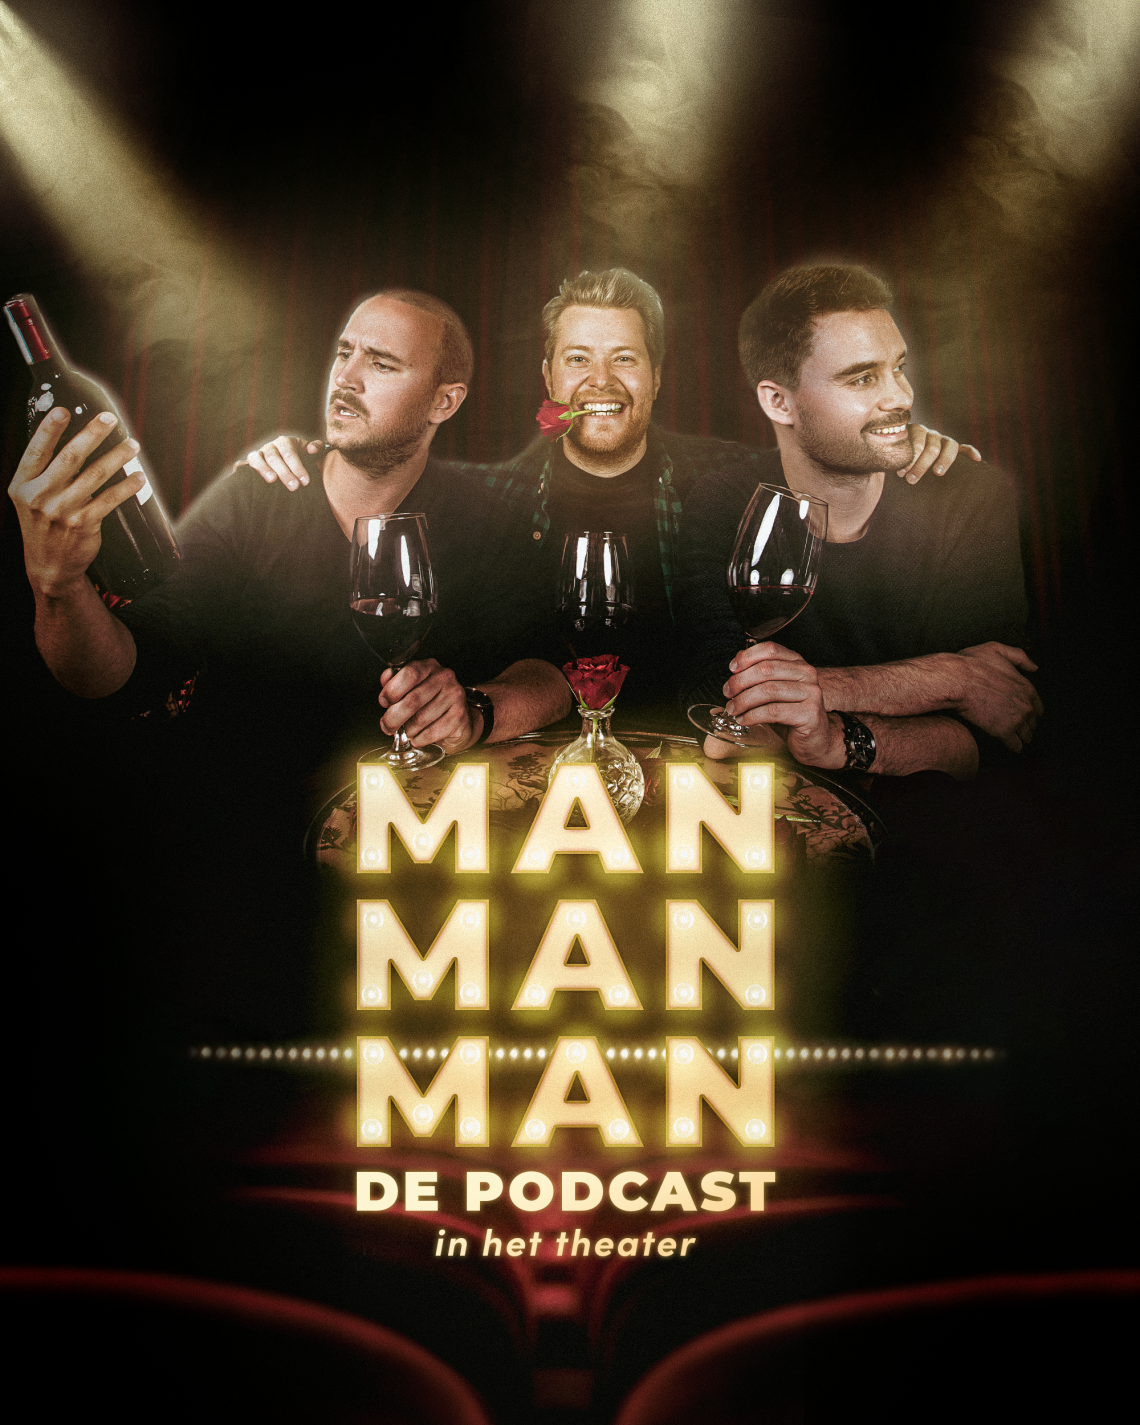 Man man man, de podcast - in het theater